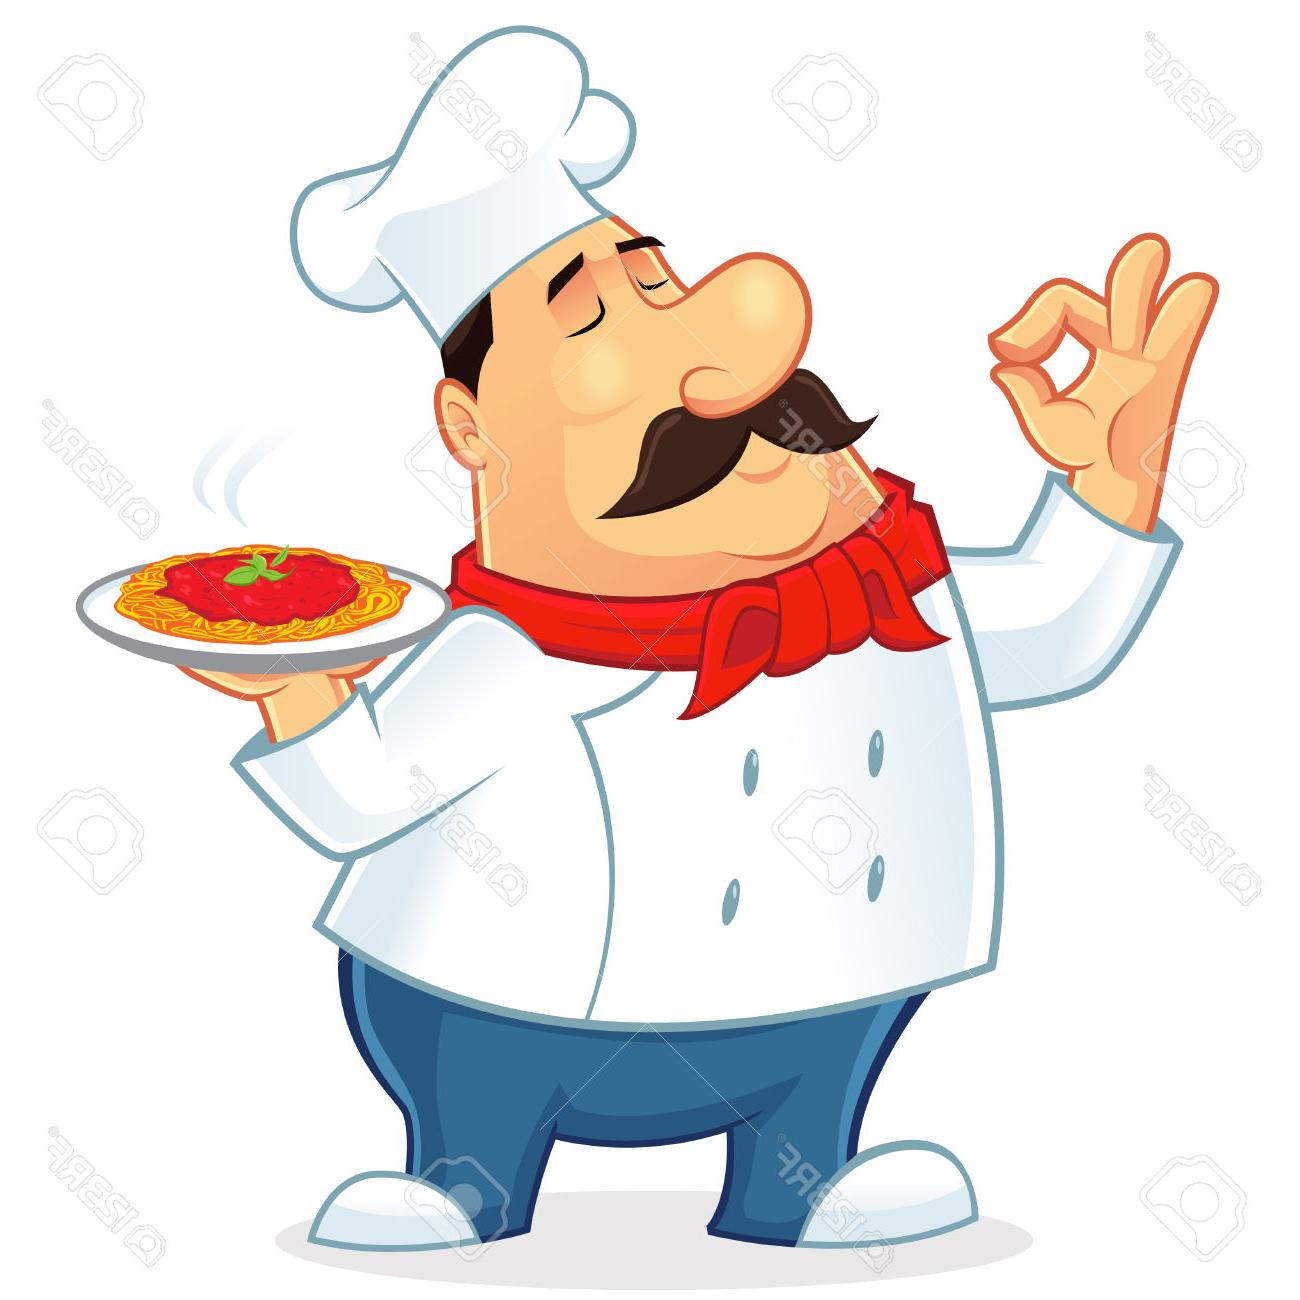 chef clipart chef italian